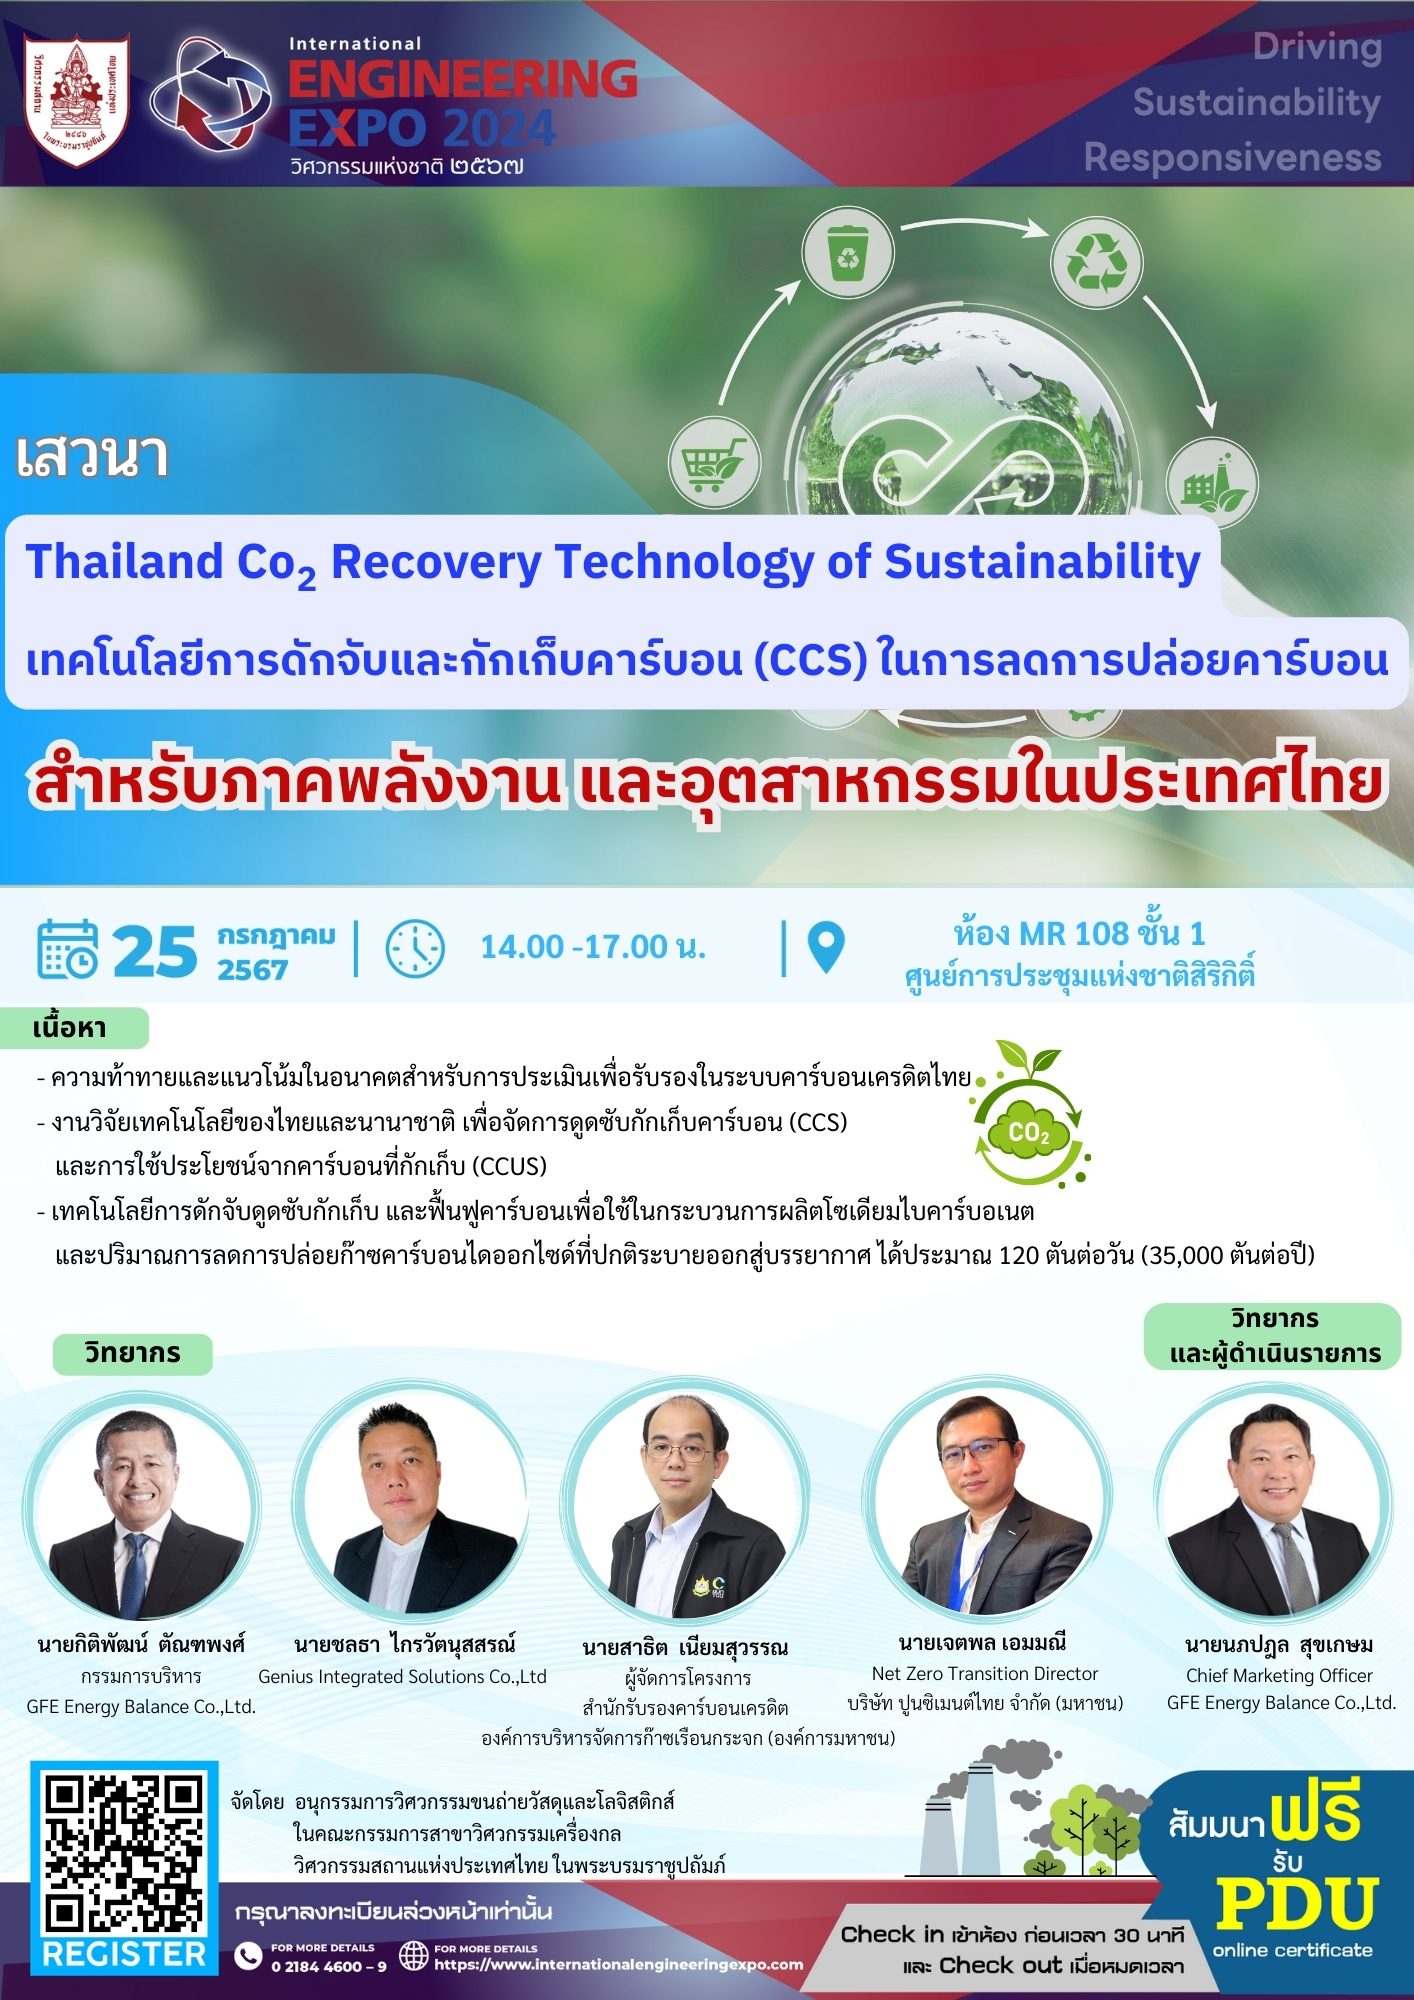 เสวนา Thailand Co2  Recovery Technology of Sustainability เทคโนโลยีการดักจับและกักเก็บคาร์บอน (CCS) ในการลดการปล่อยคาร์บอน สำหรับภาคพลังงาน และอุตสาหกรรมในประเทศไทย